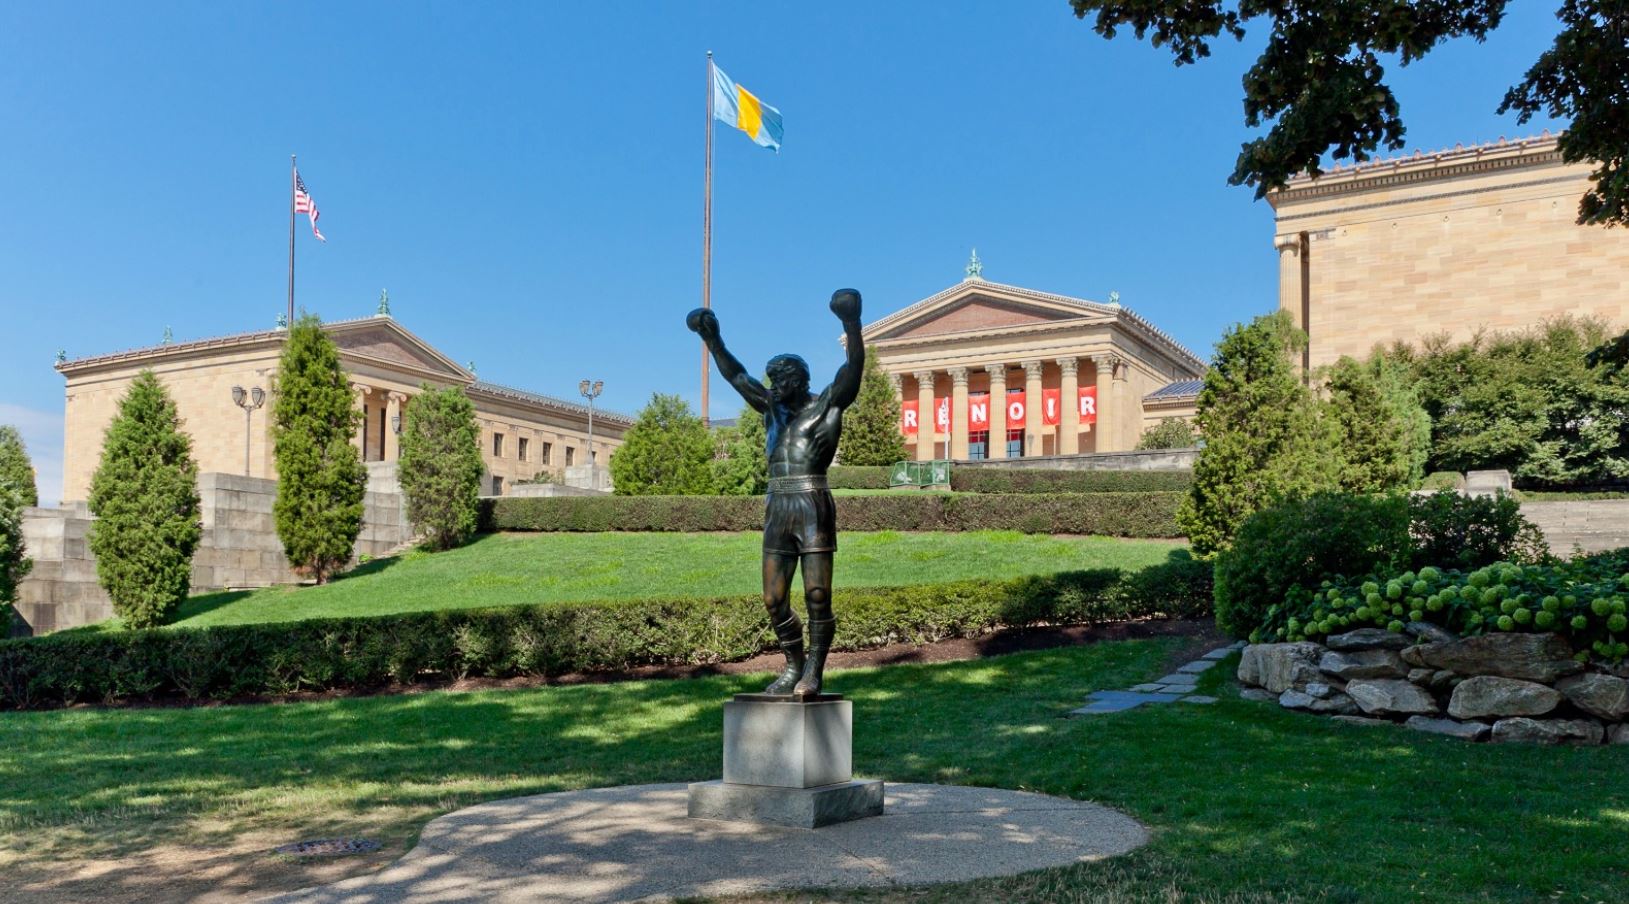 PhiladelphiaArtMuseum